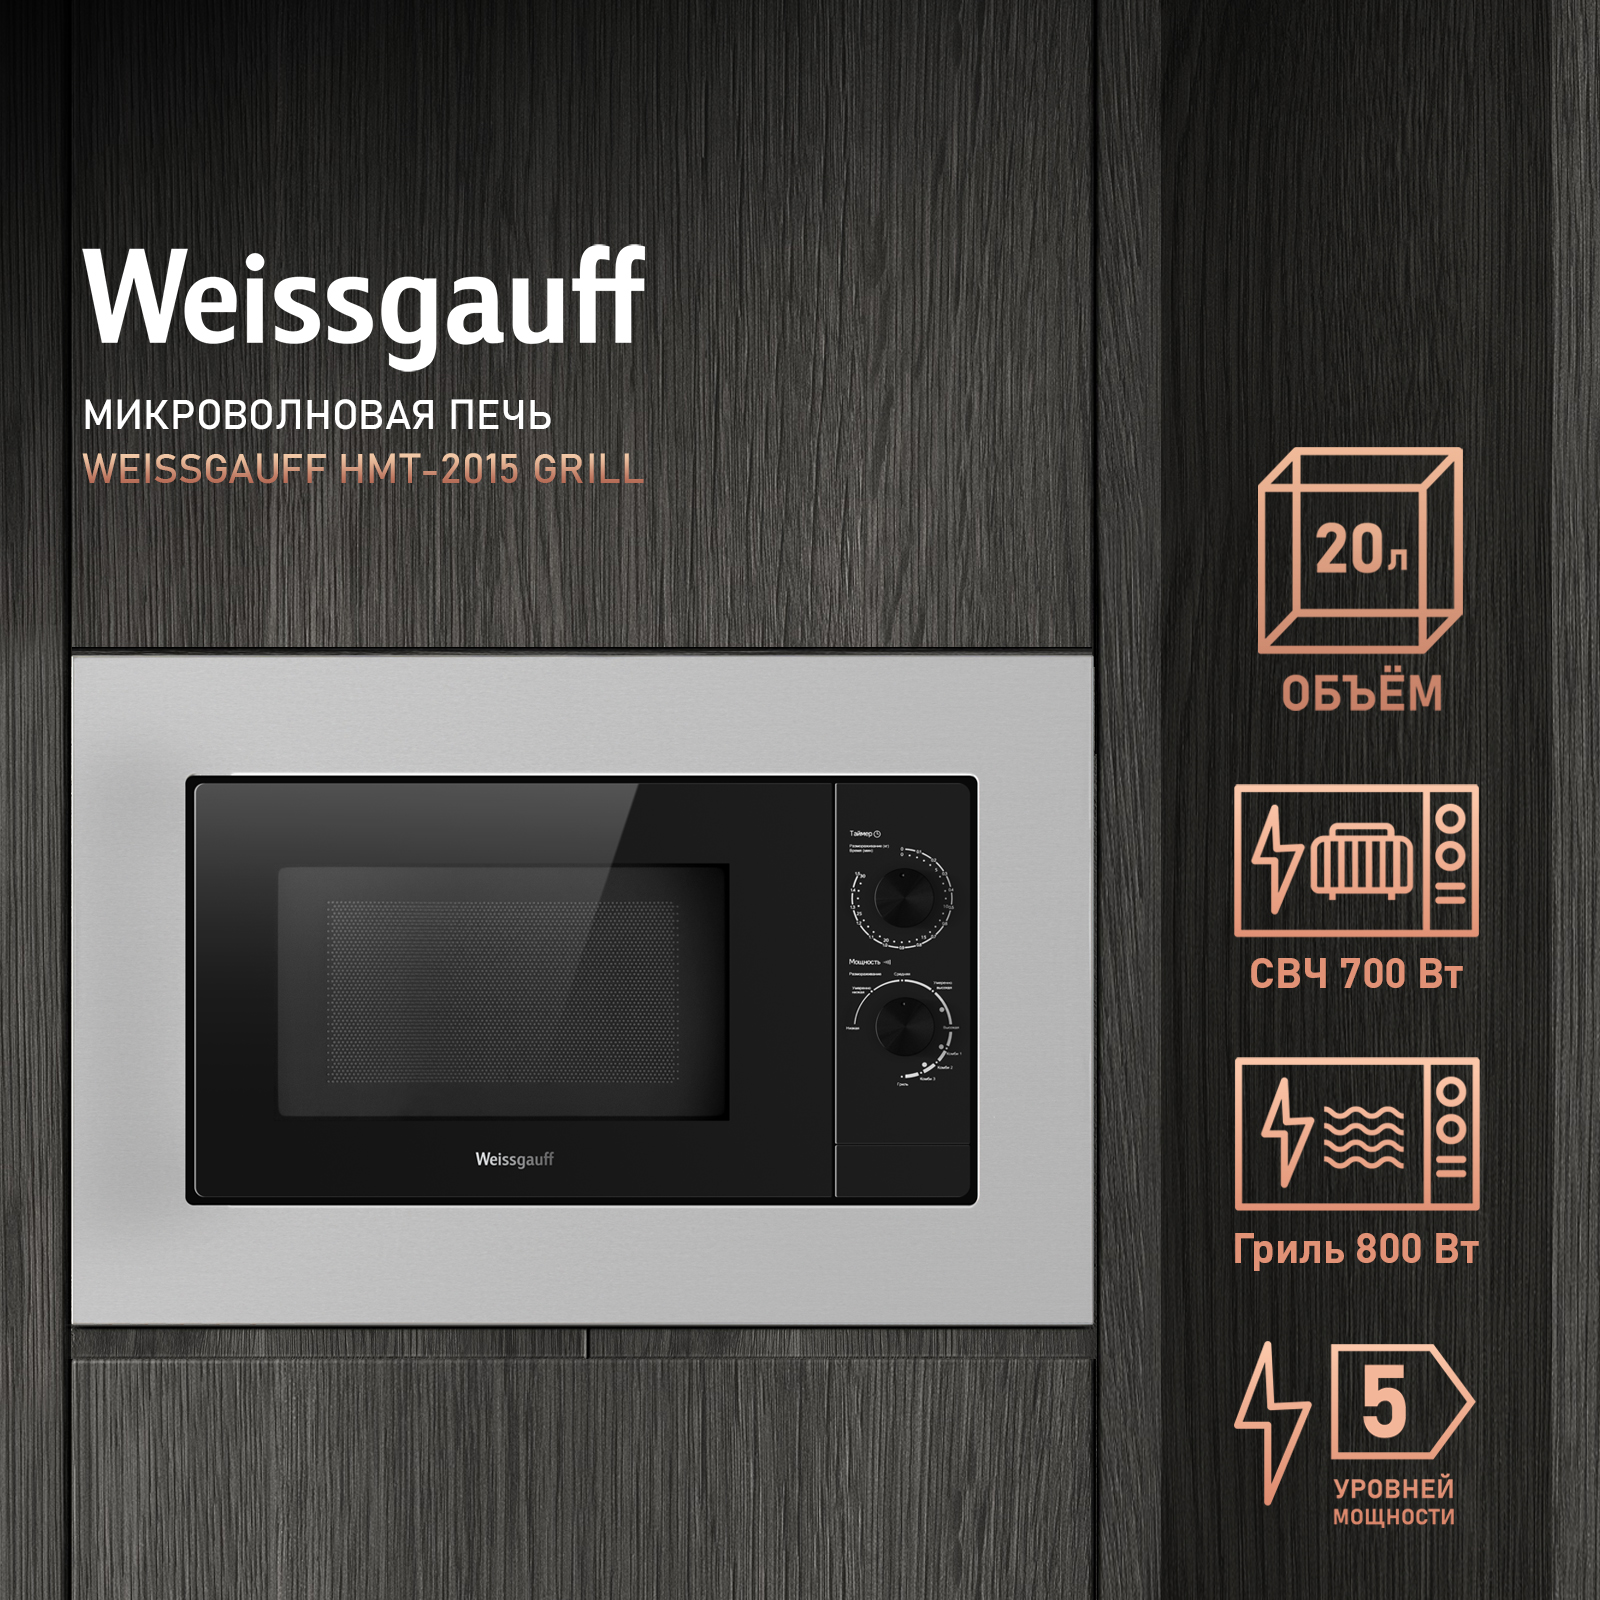 Встраиваемая микроволновая печь Weissgauff HMT-2015 Grill серебристая